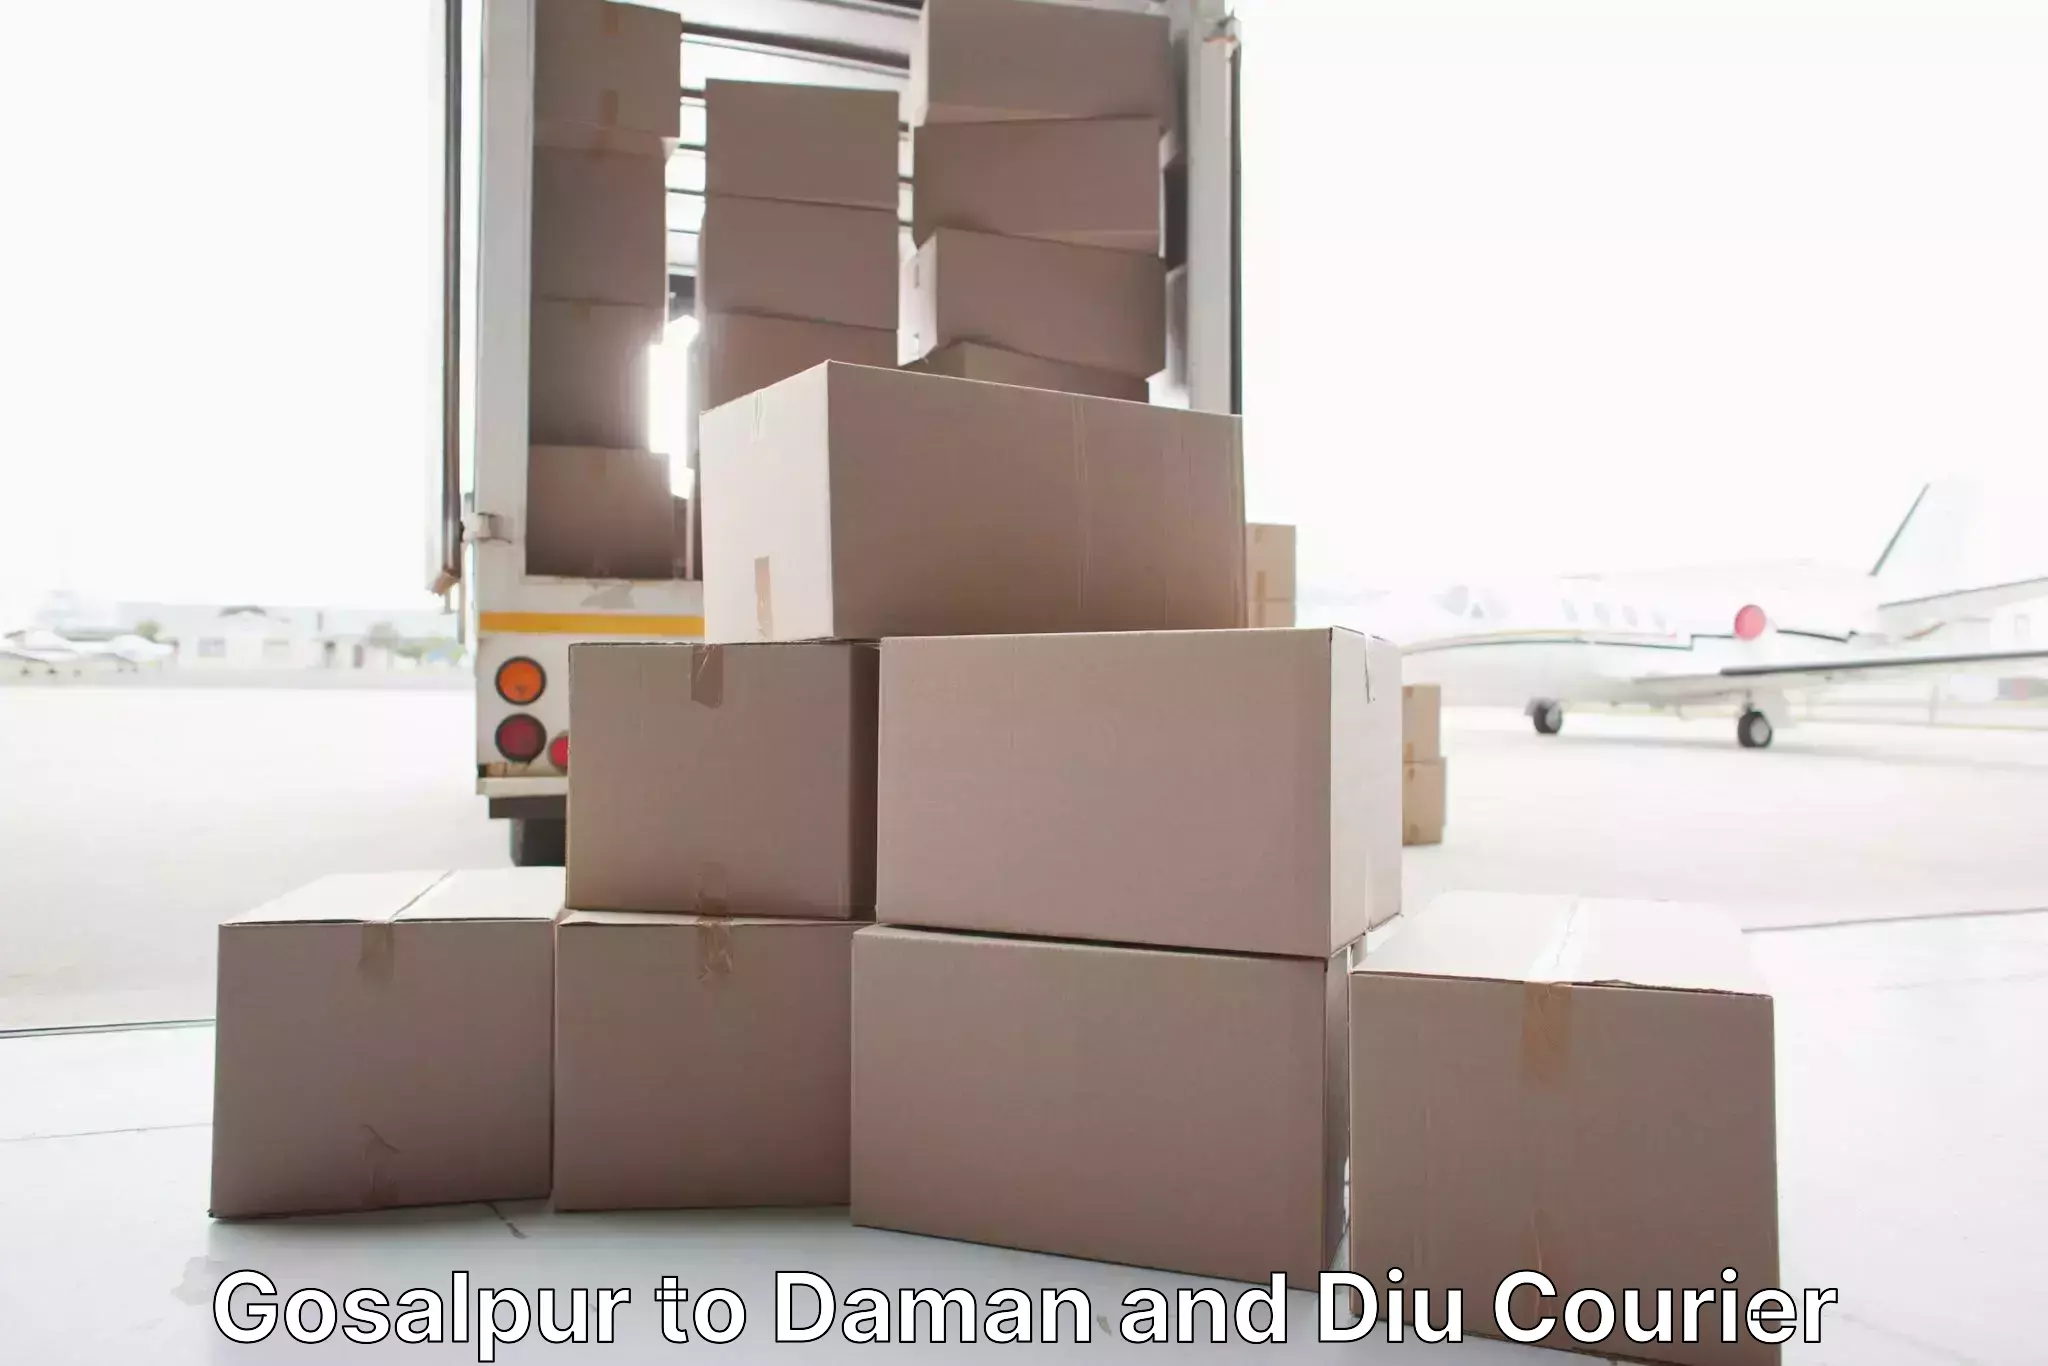 Expert goods movers Gosalpur to Daman and Diu